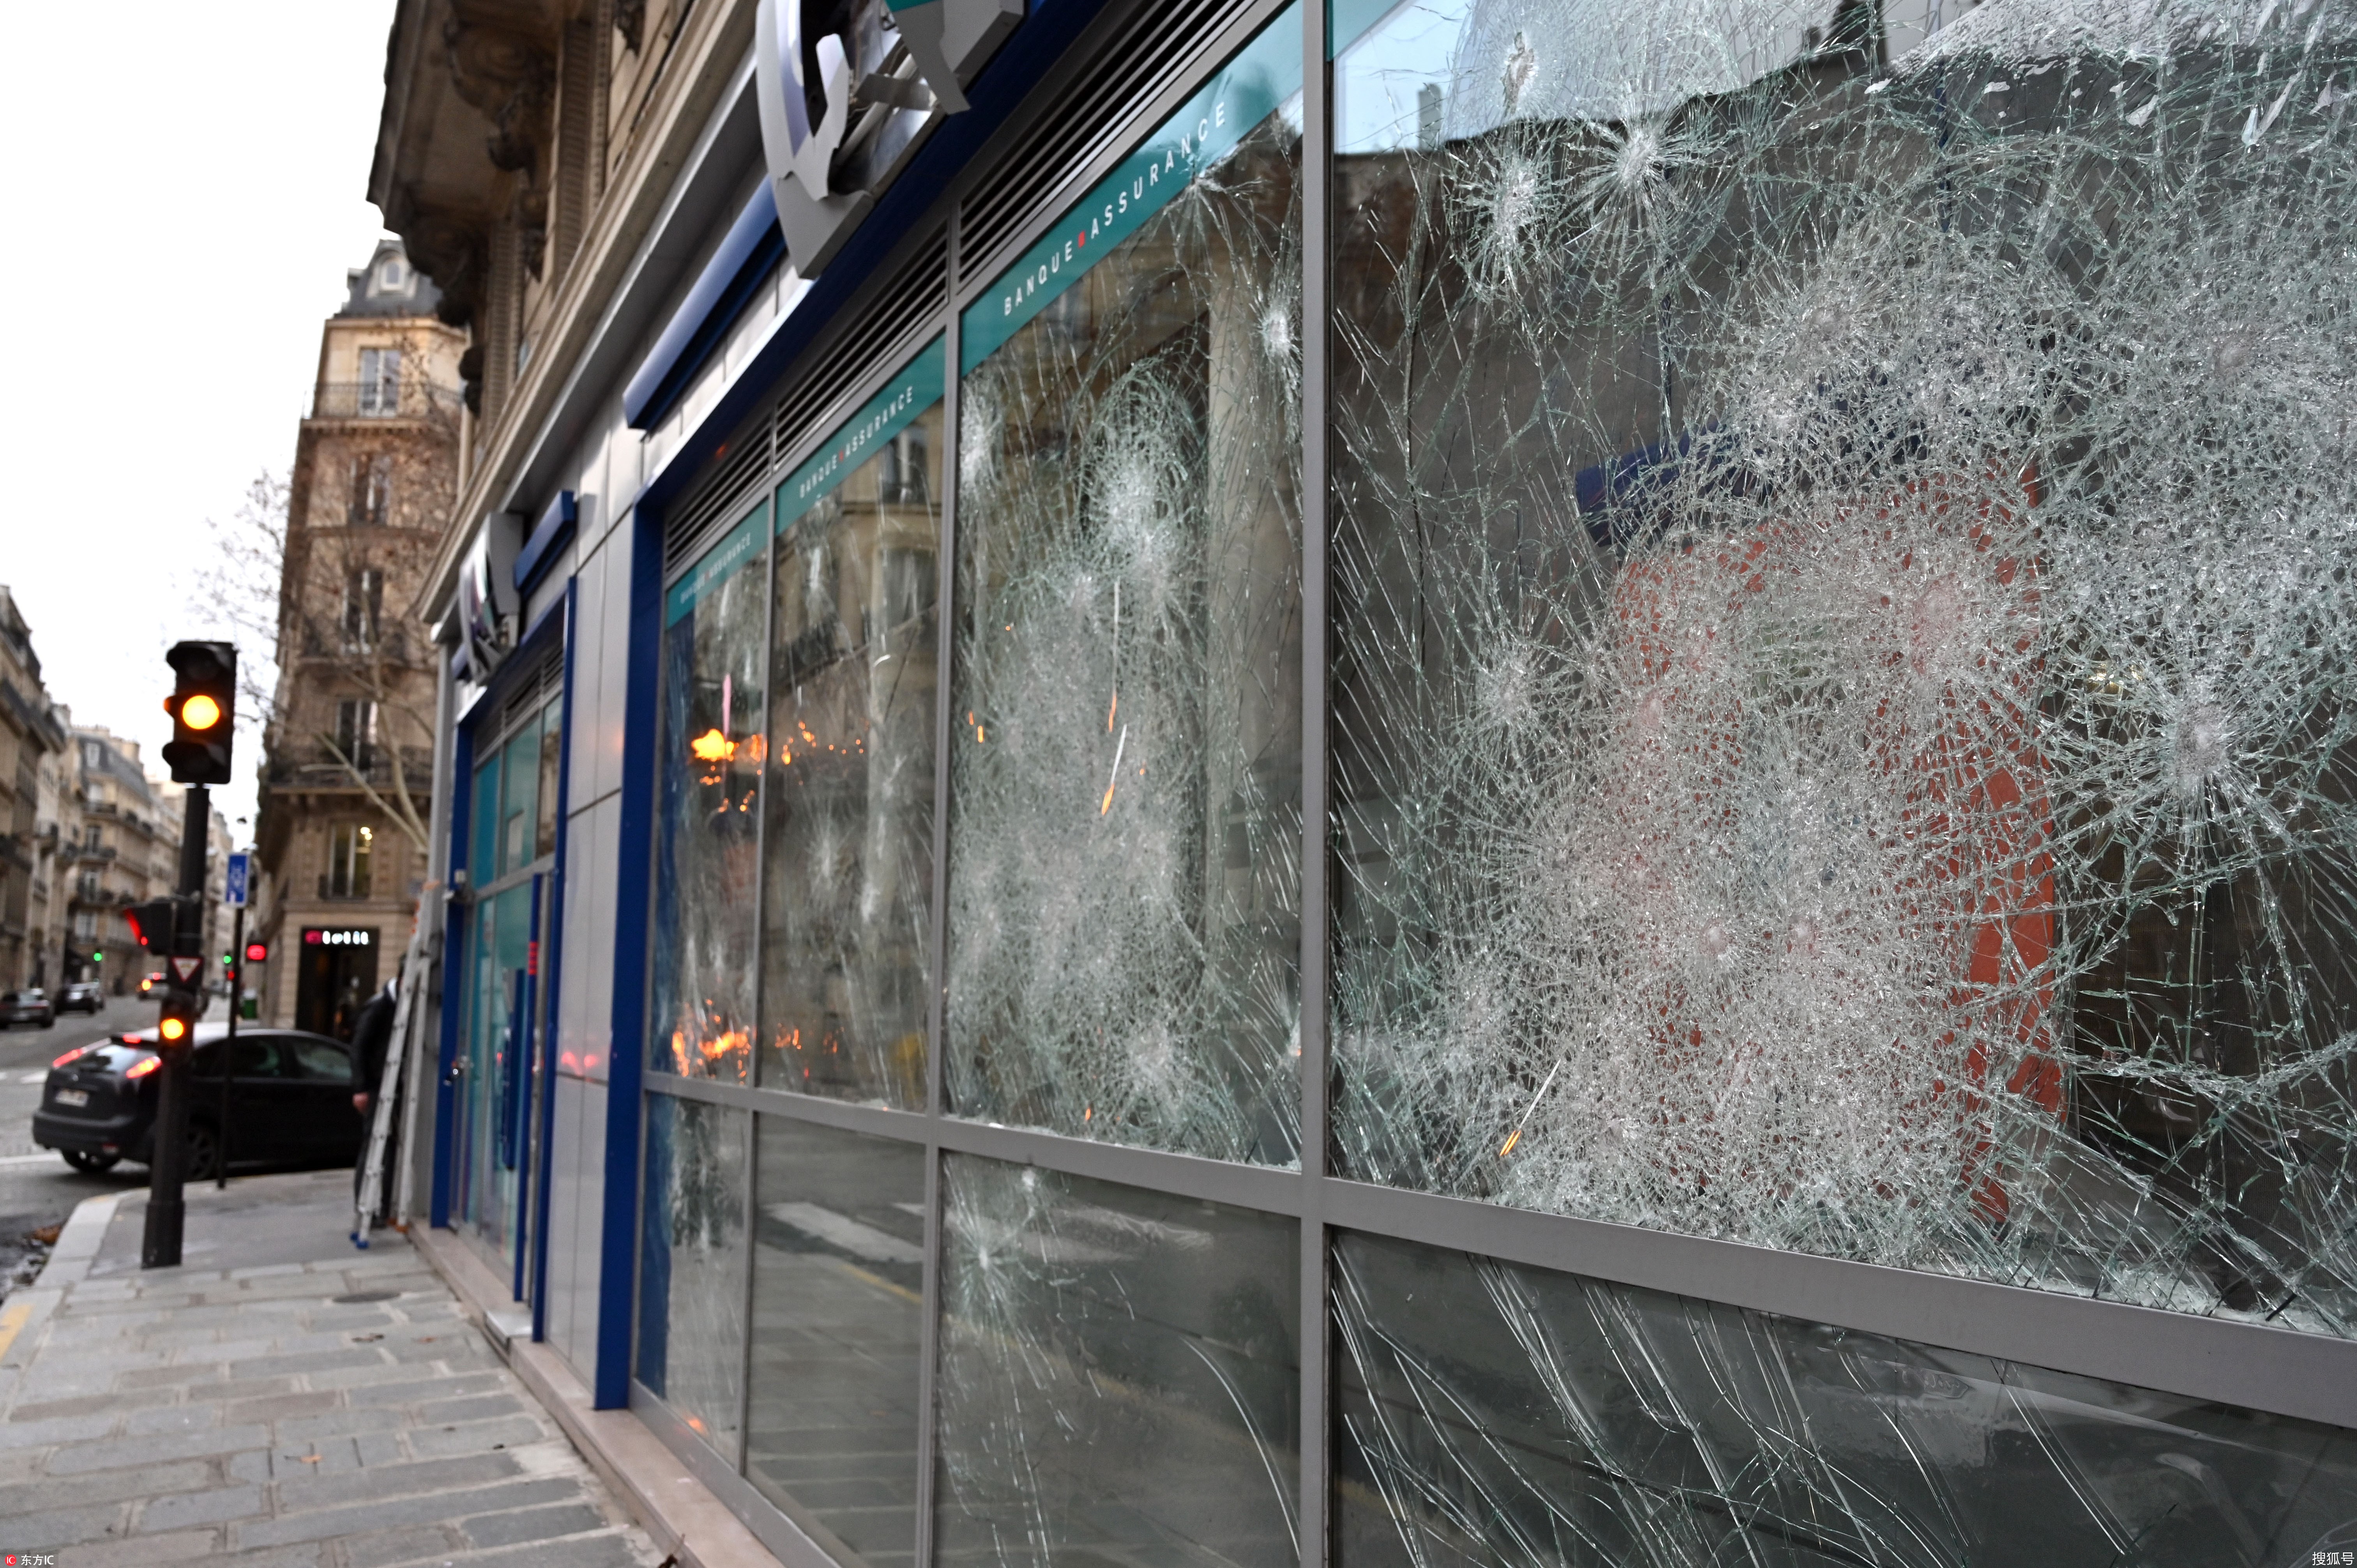 来看被法国人亲手毁掉的家园:碎玻璃满街遍地狼藉